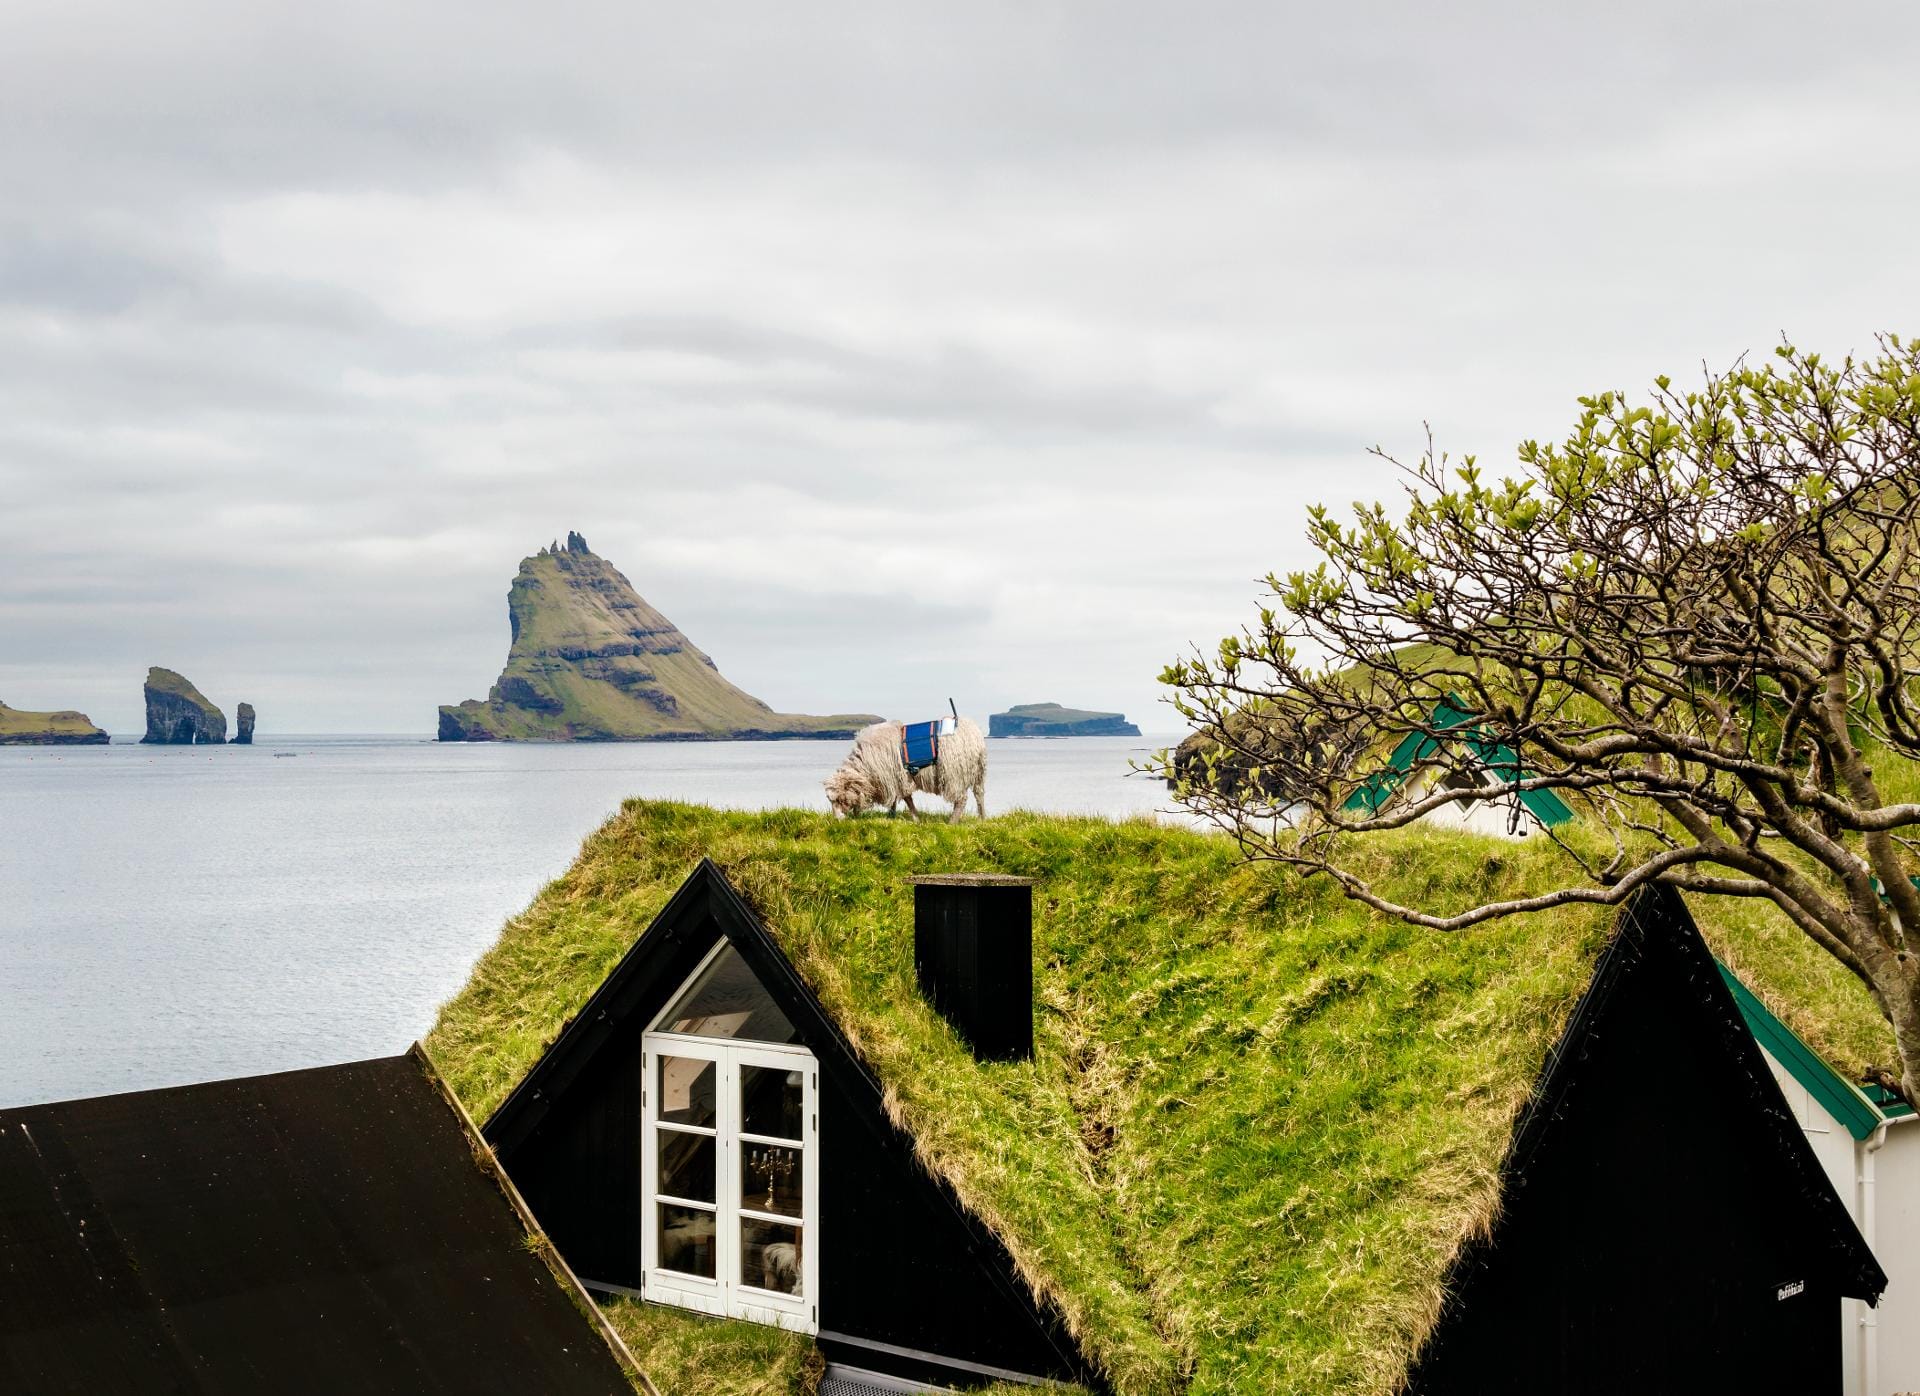 Wo Gras wächst, kommt irgendwann auch ein Schaf. Auf den Färöer-Inseln gibt es sehr viel mehr Schafe (etwa 70.000) als Menschen (etwa 49.000).